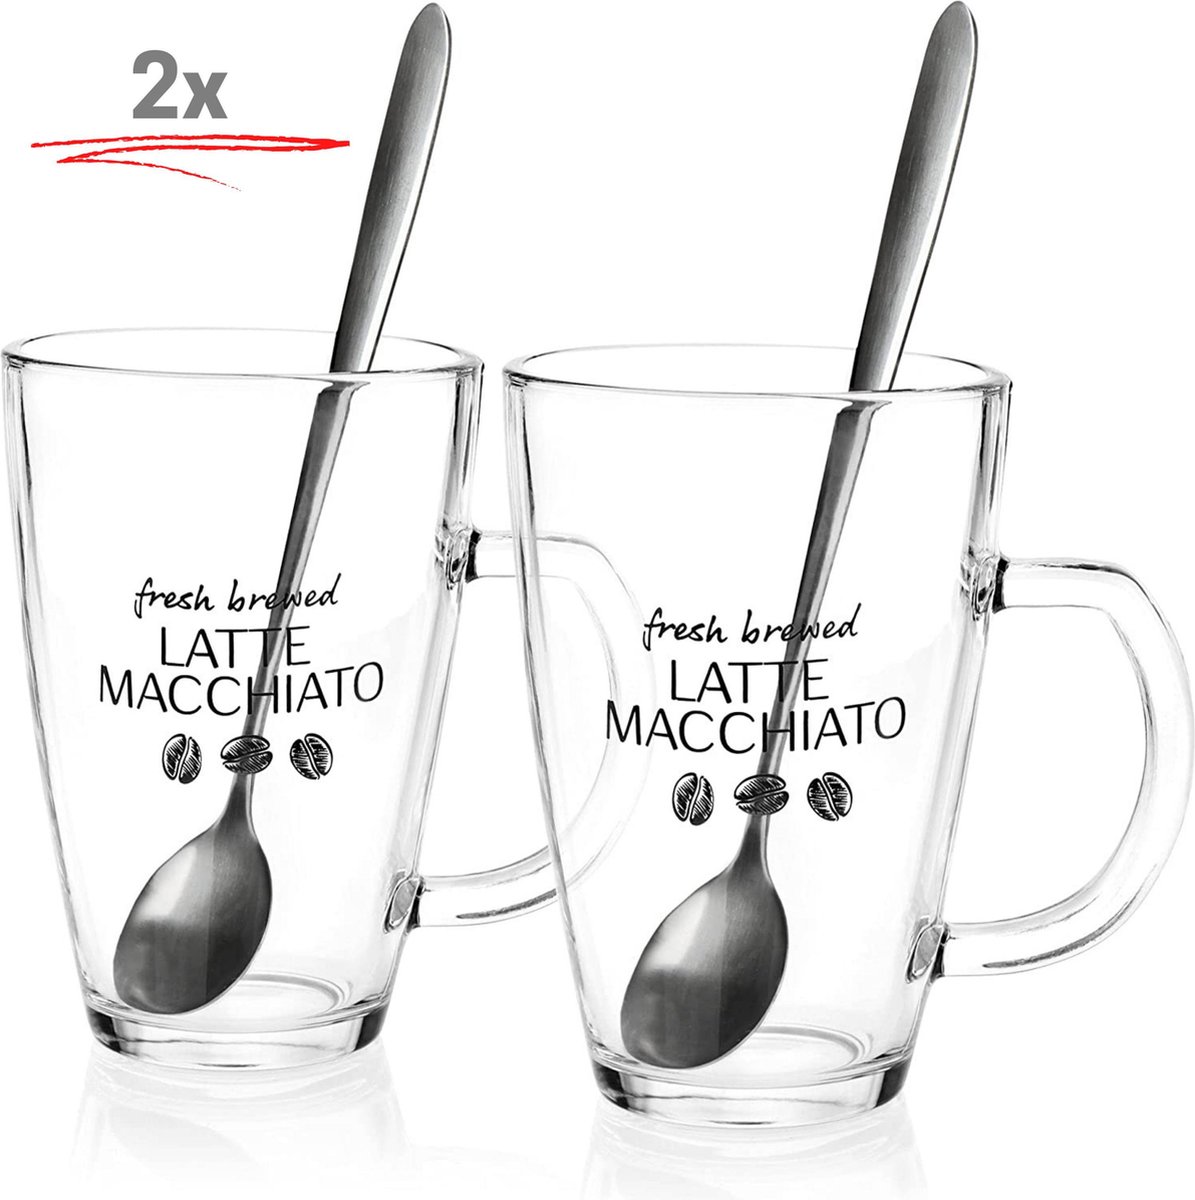 2 x 300ml Latte Macchiato koffie bekers/mugs met 2 lepels - 4-Delig